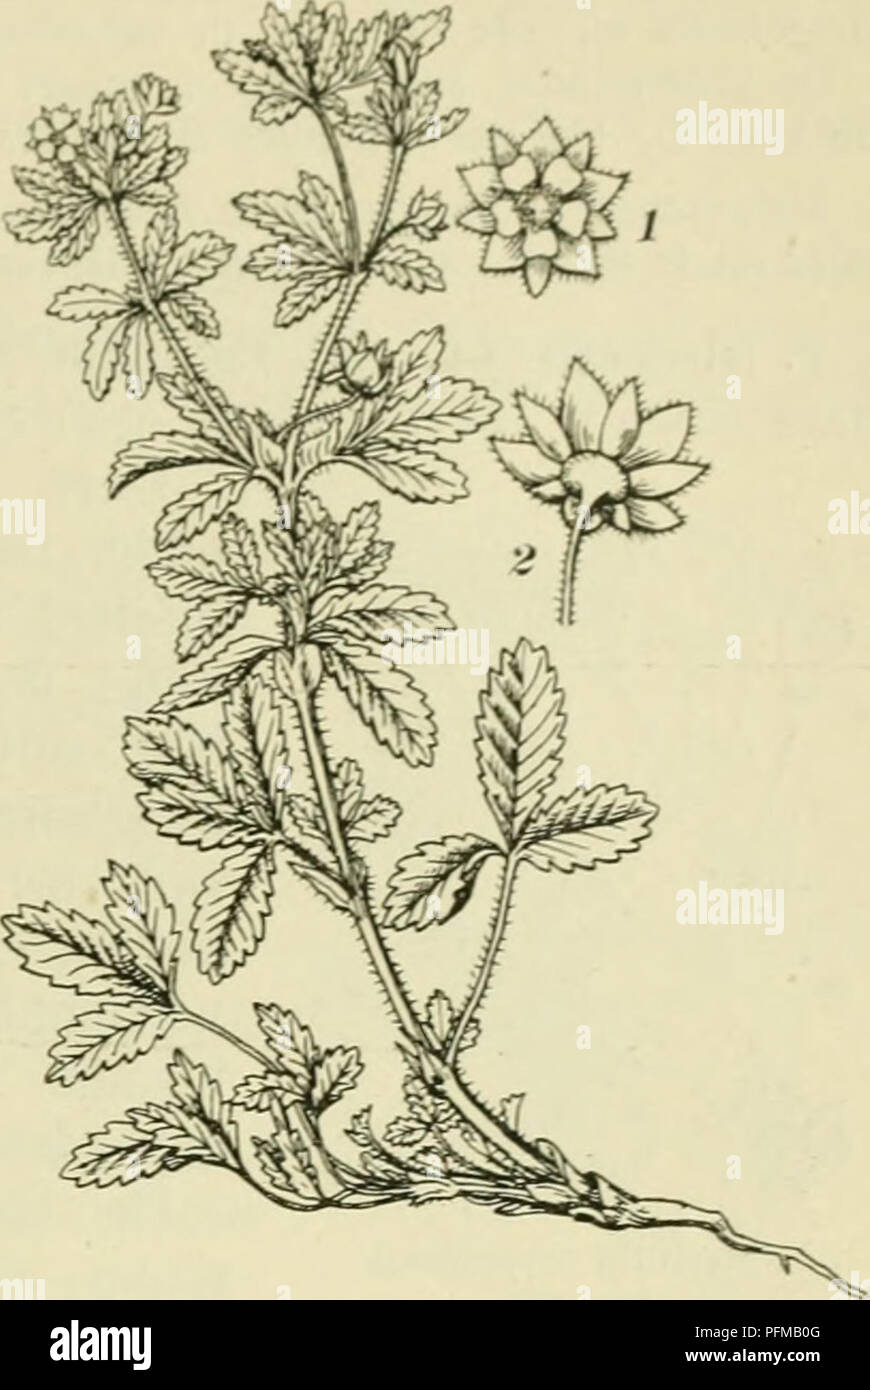 . De flora van Nederland. Plants. Potentilla recta Fig. 688. Potentilla norveg;ca Fig. 687. 1-2 bloem. P. norvègica') L. Noorschc ganzerik (fig. 687). Deze plant is afstaand ruw behaard. De stengel is rechtopstaand RaffcIvormlK vertakt, rijkbloemiR. De bladen zijn 3-tallif;. De blaadjes der onderste (zelden fjevind &quot;i-T-talliRe) bladen zijn wijjvormiii-omgekeerd eirond, zittend, die der bovenste lancetvormig, alle zijn grof gezaagd. De steiinbladen zijn groot, langgespitst, ongedeeld. De bloemstelen zijn na den bloei rechtop-of af- staand en overigens als bij P. supina. De vrucht is kaal, Stock Photo